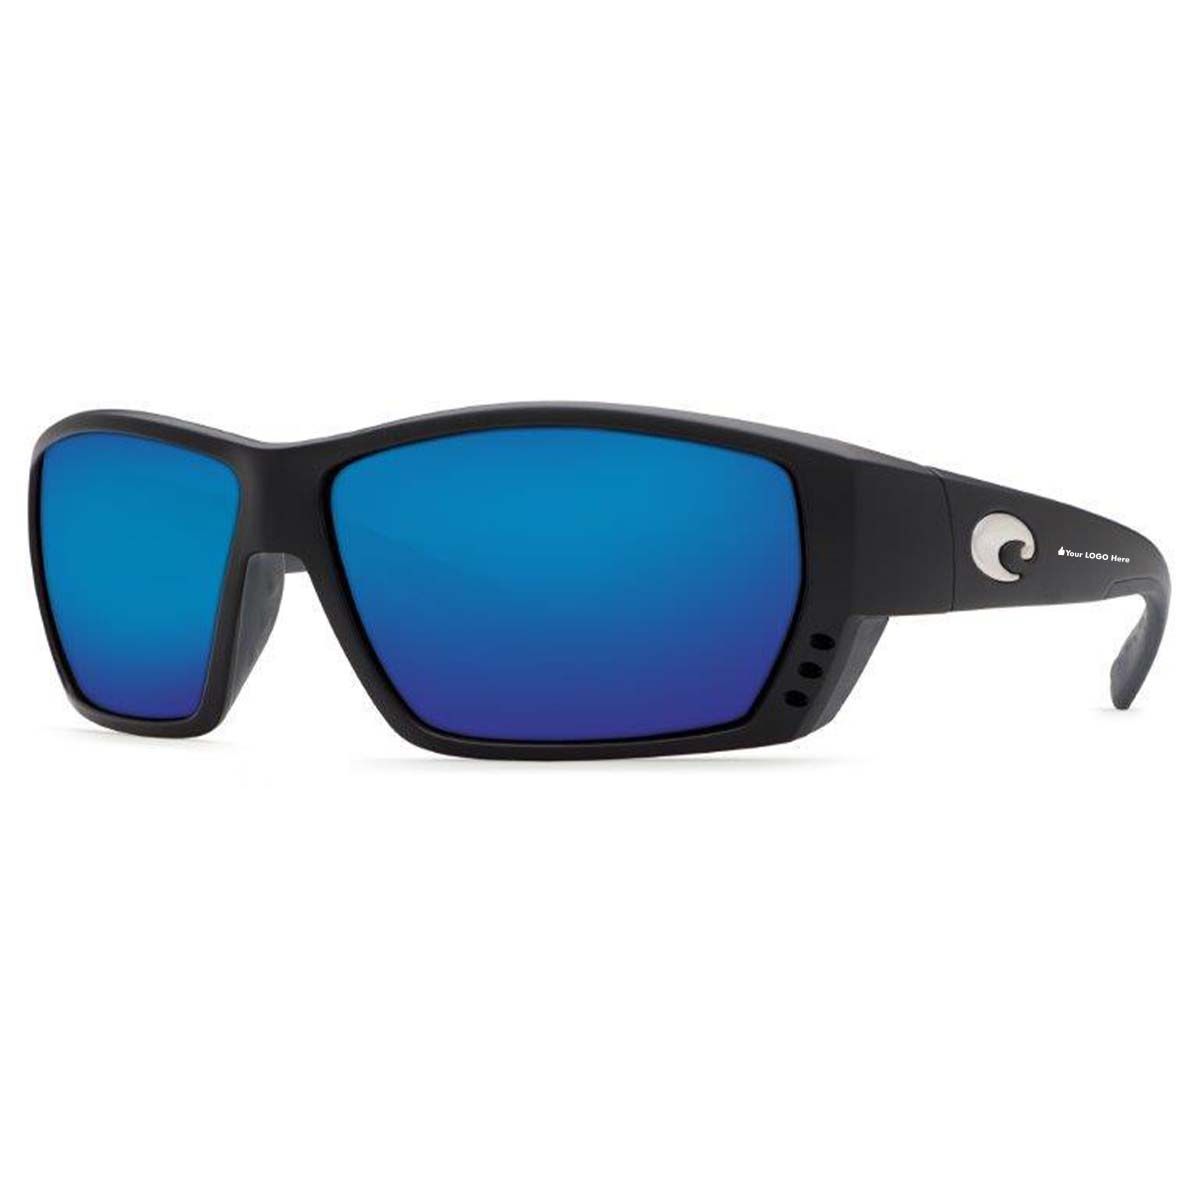 
                  
                    Costa Del Mar Tuna Alley Sunglasses - (Frame) Matte Black; (Lens) Blue Mirror, 580G
                  
                